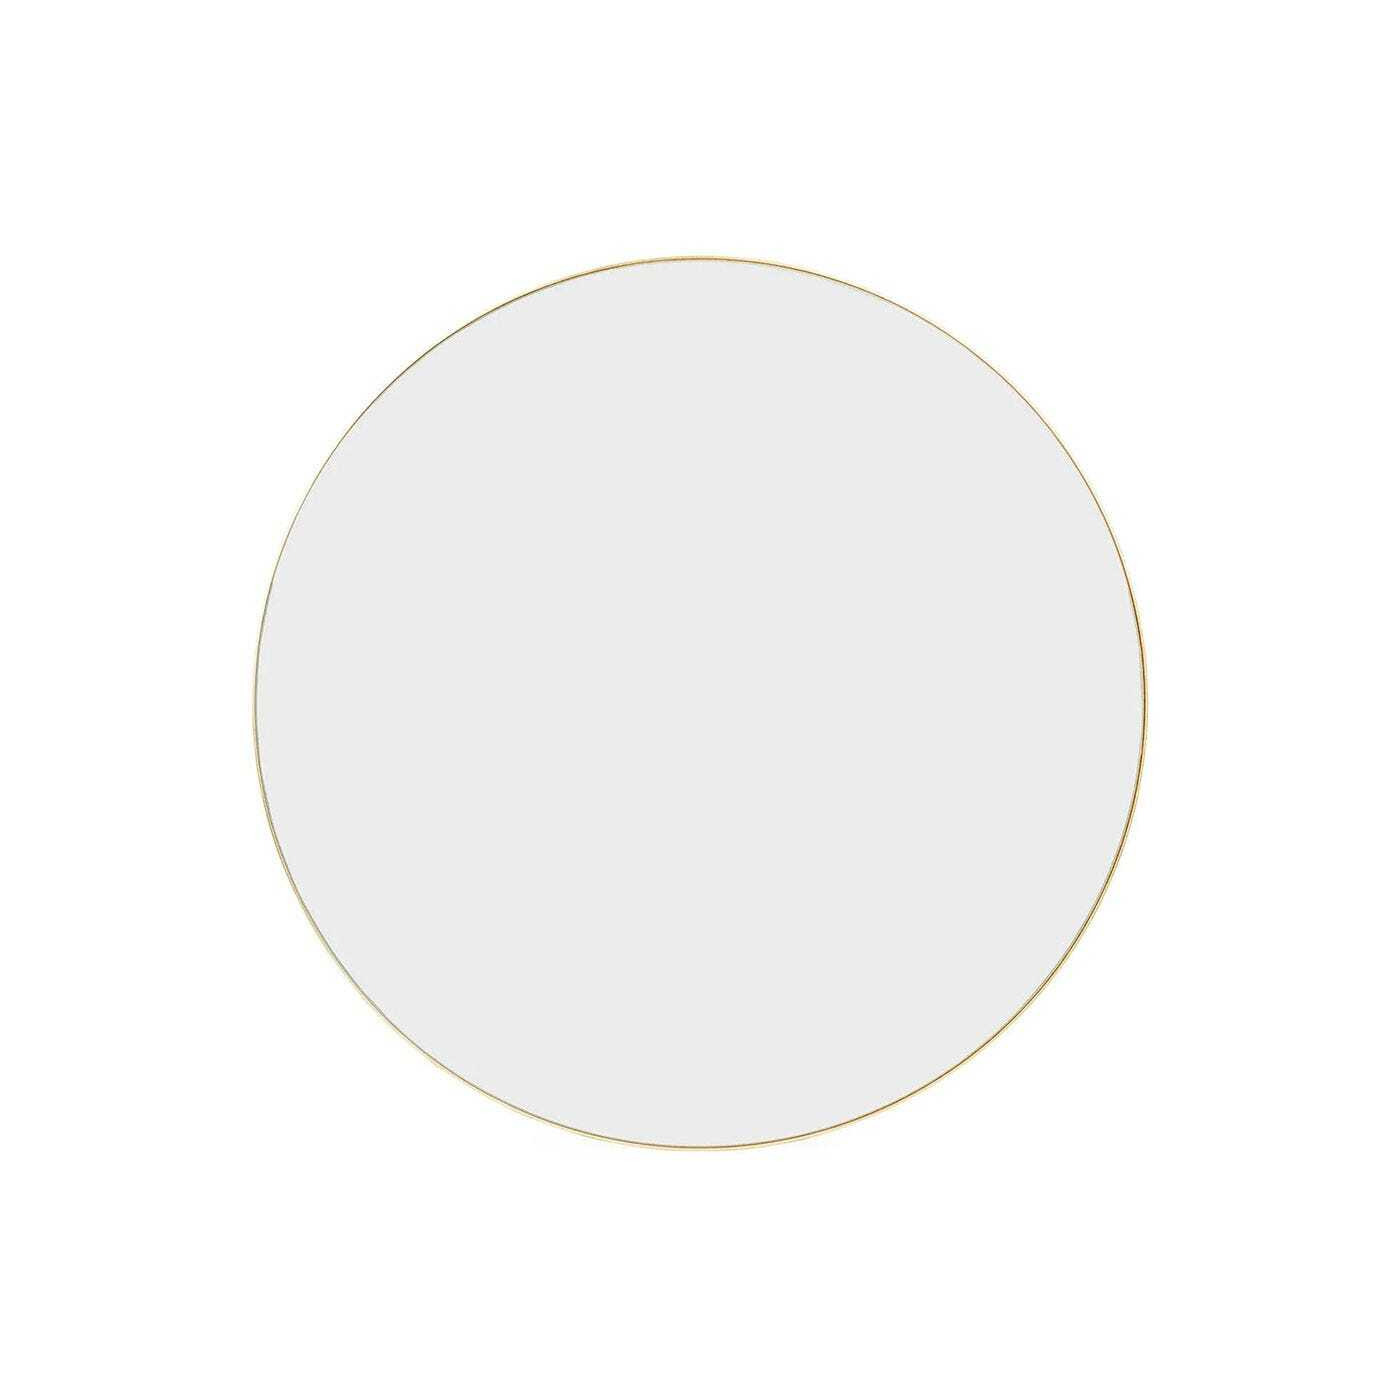 Heal's Fine Edge Mirror Round 35cm Gold - image 1